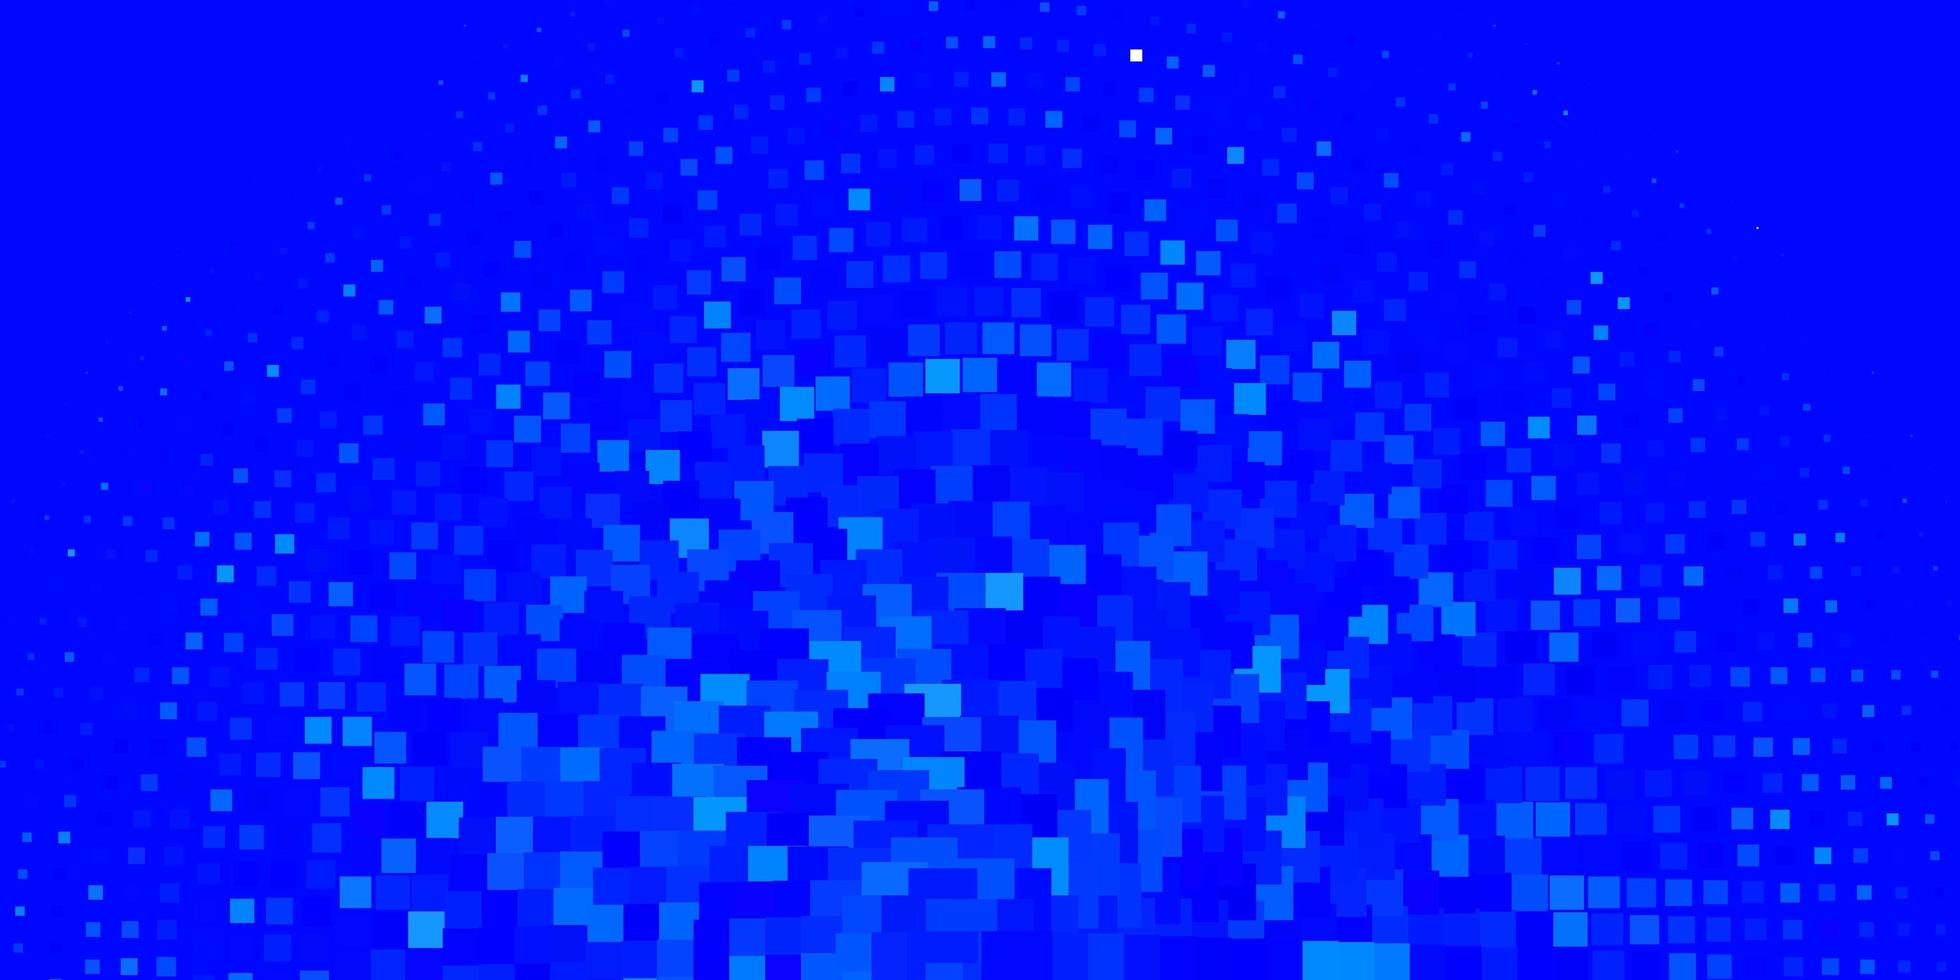 padrão de vetor azul claro em estilo quadrado. ilustração gradiente abstrata com retângulos coloridos. modelo para celulares.